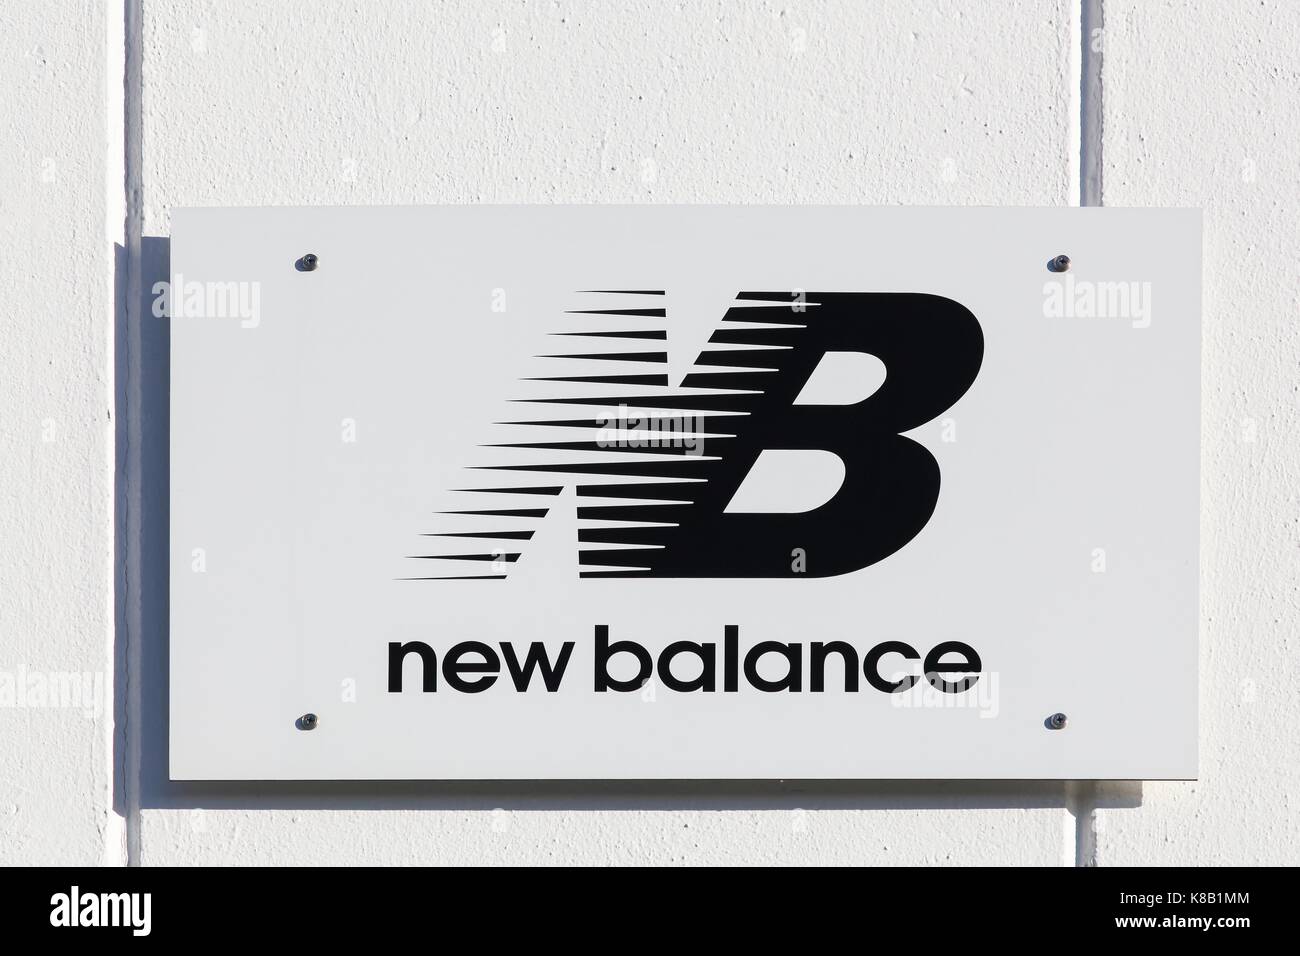 Merignac, Frankreich - Juni 5, 2017: Neue Balance Logo auf eine Wand. New Balance ist eine US-amerikanische multinationale Unternehmen in Brighton, USA Stockfoto